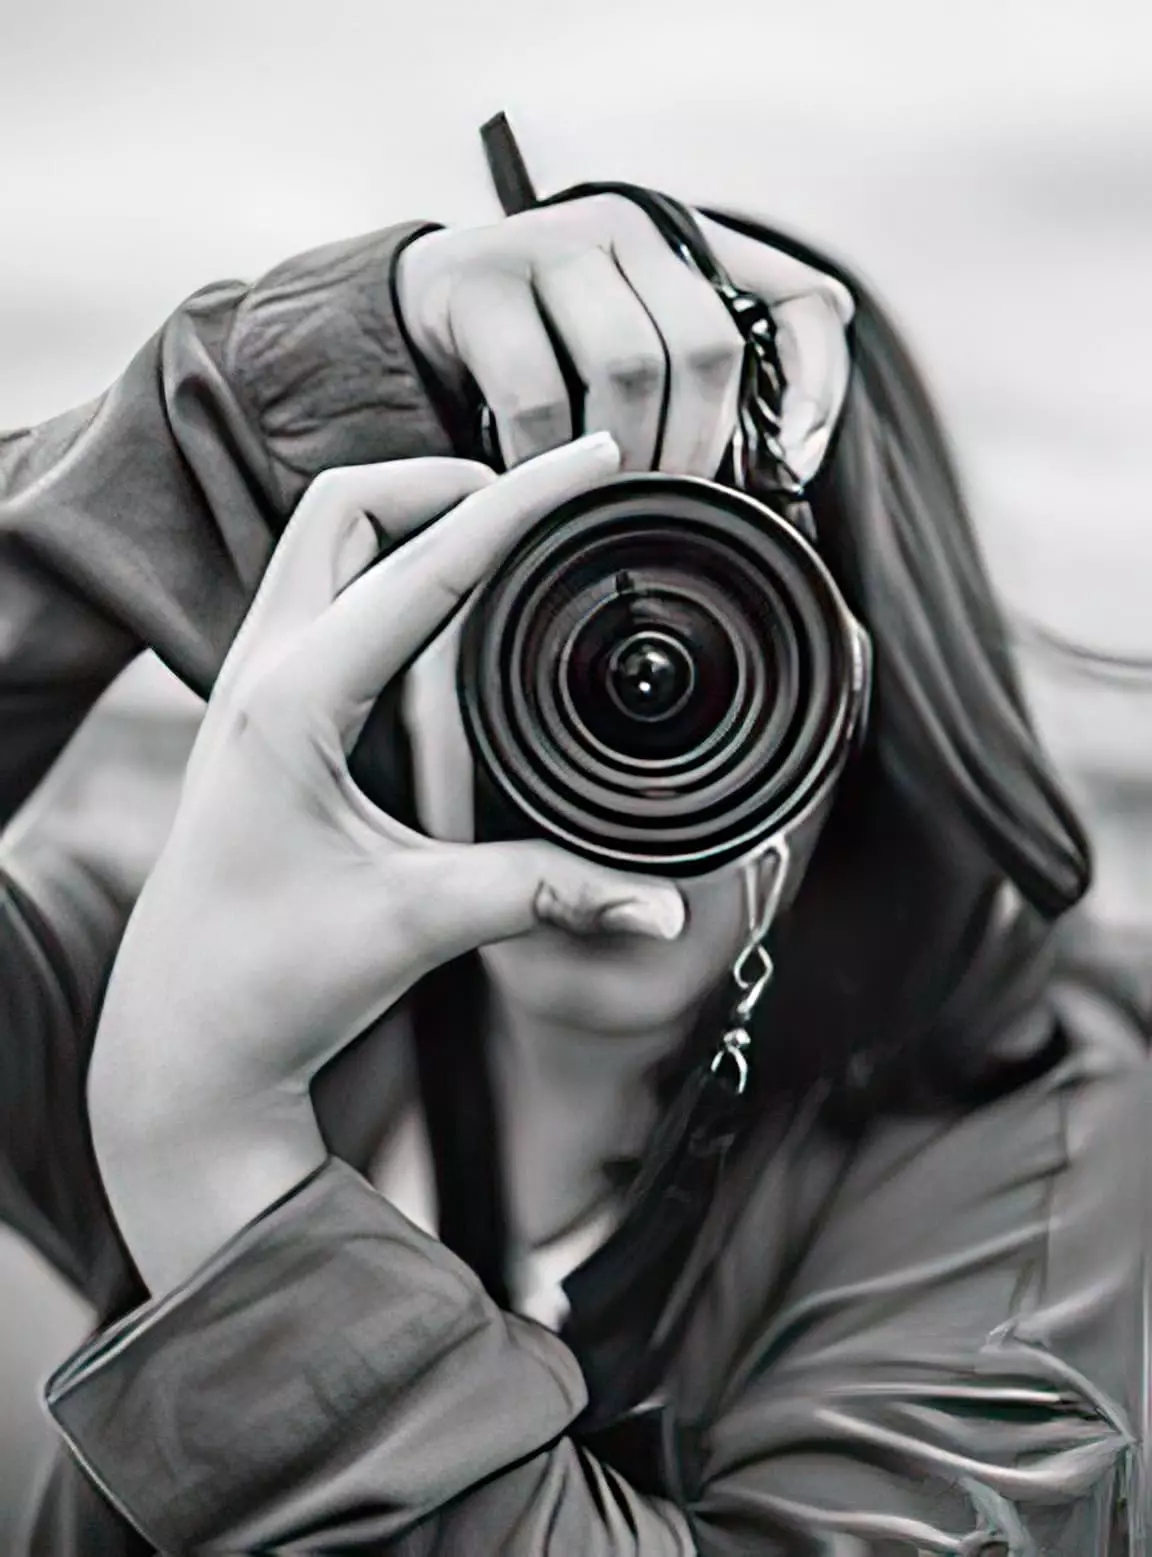 Лицо фотографа спрятано за объективом фотоаппарата во время съемки